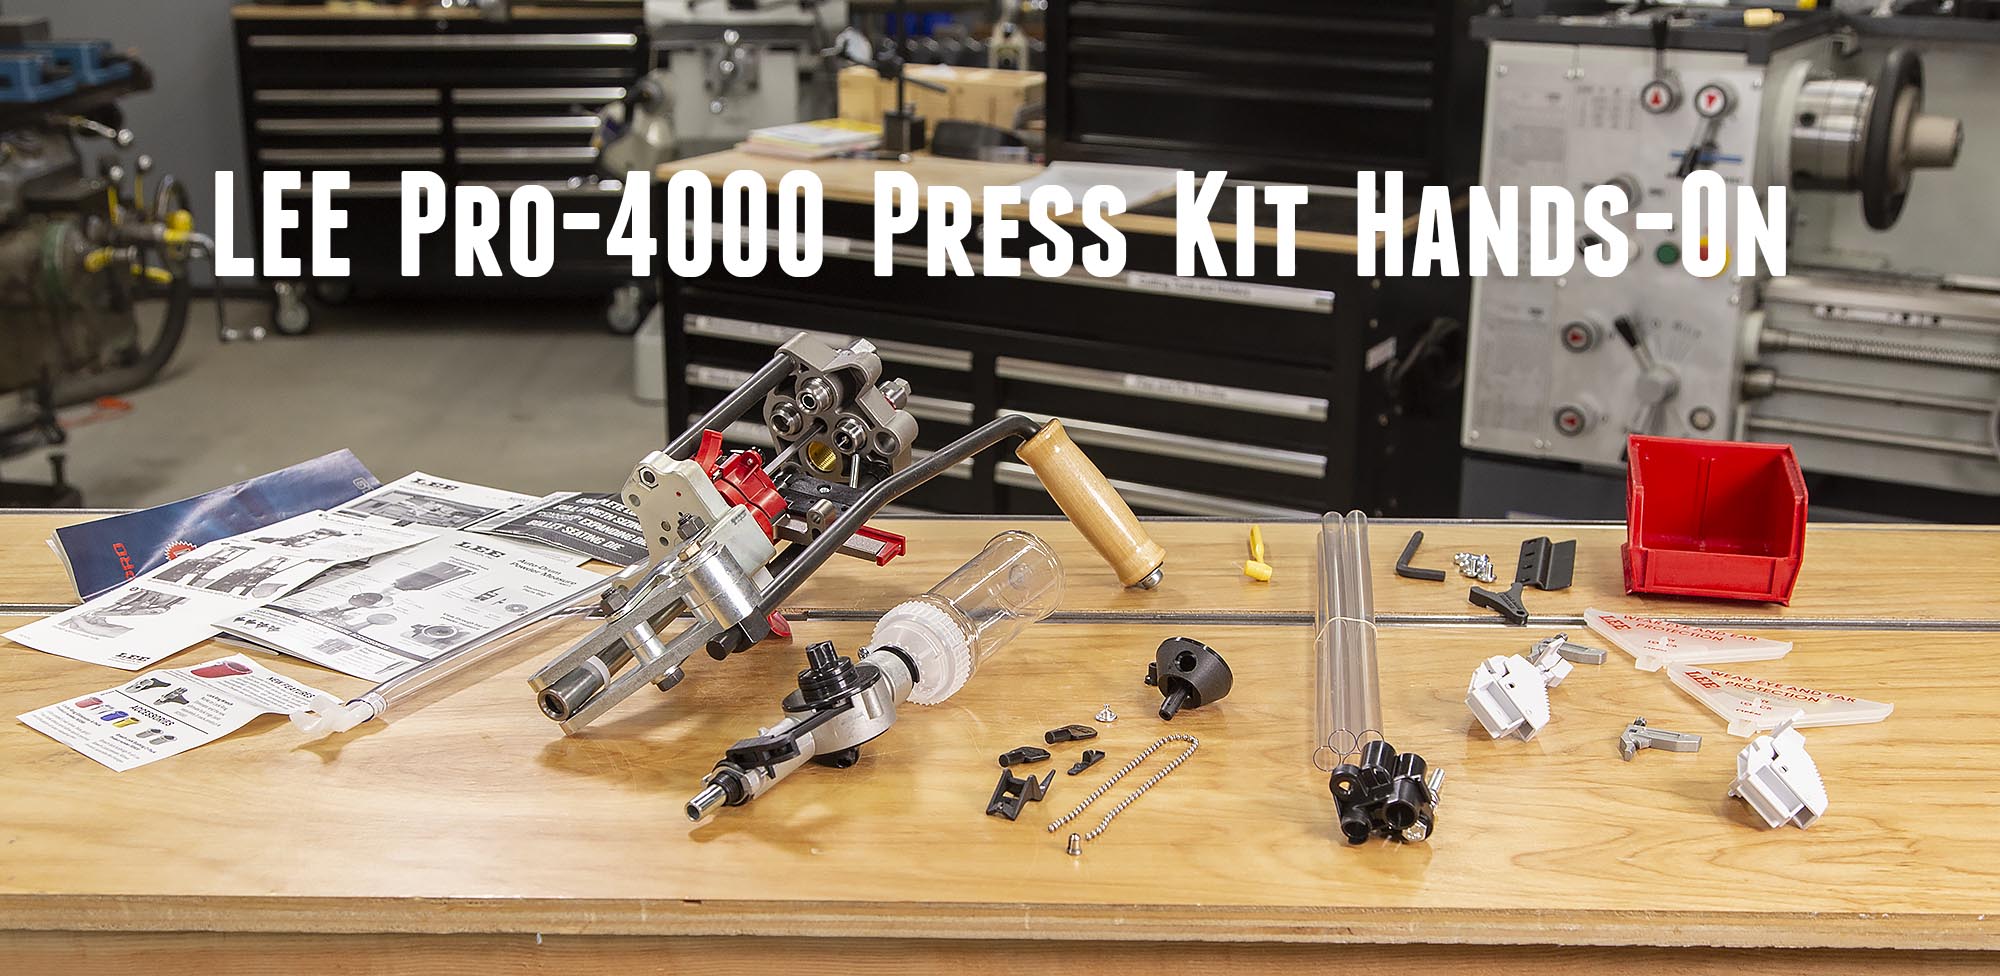 HANDS-ON: NEW Lee Pro-4000 Press Kit – Ultimate Reloader